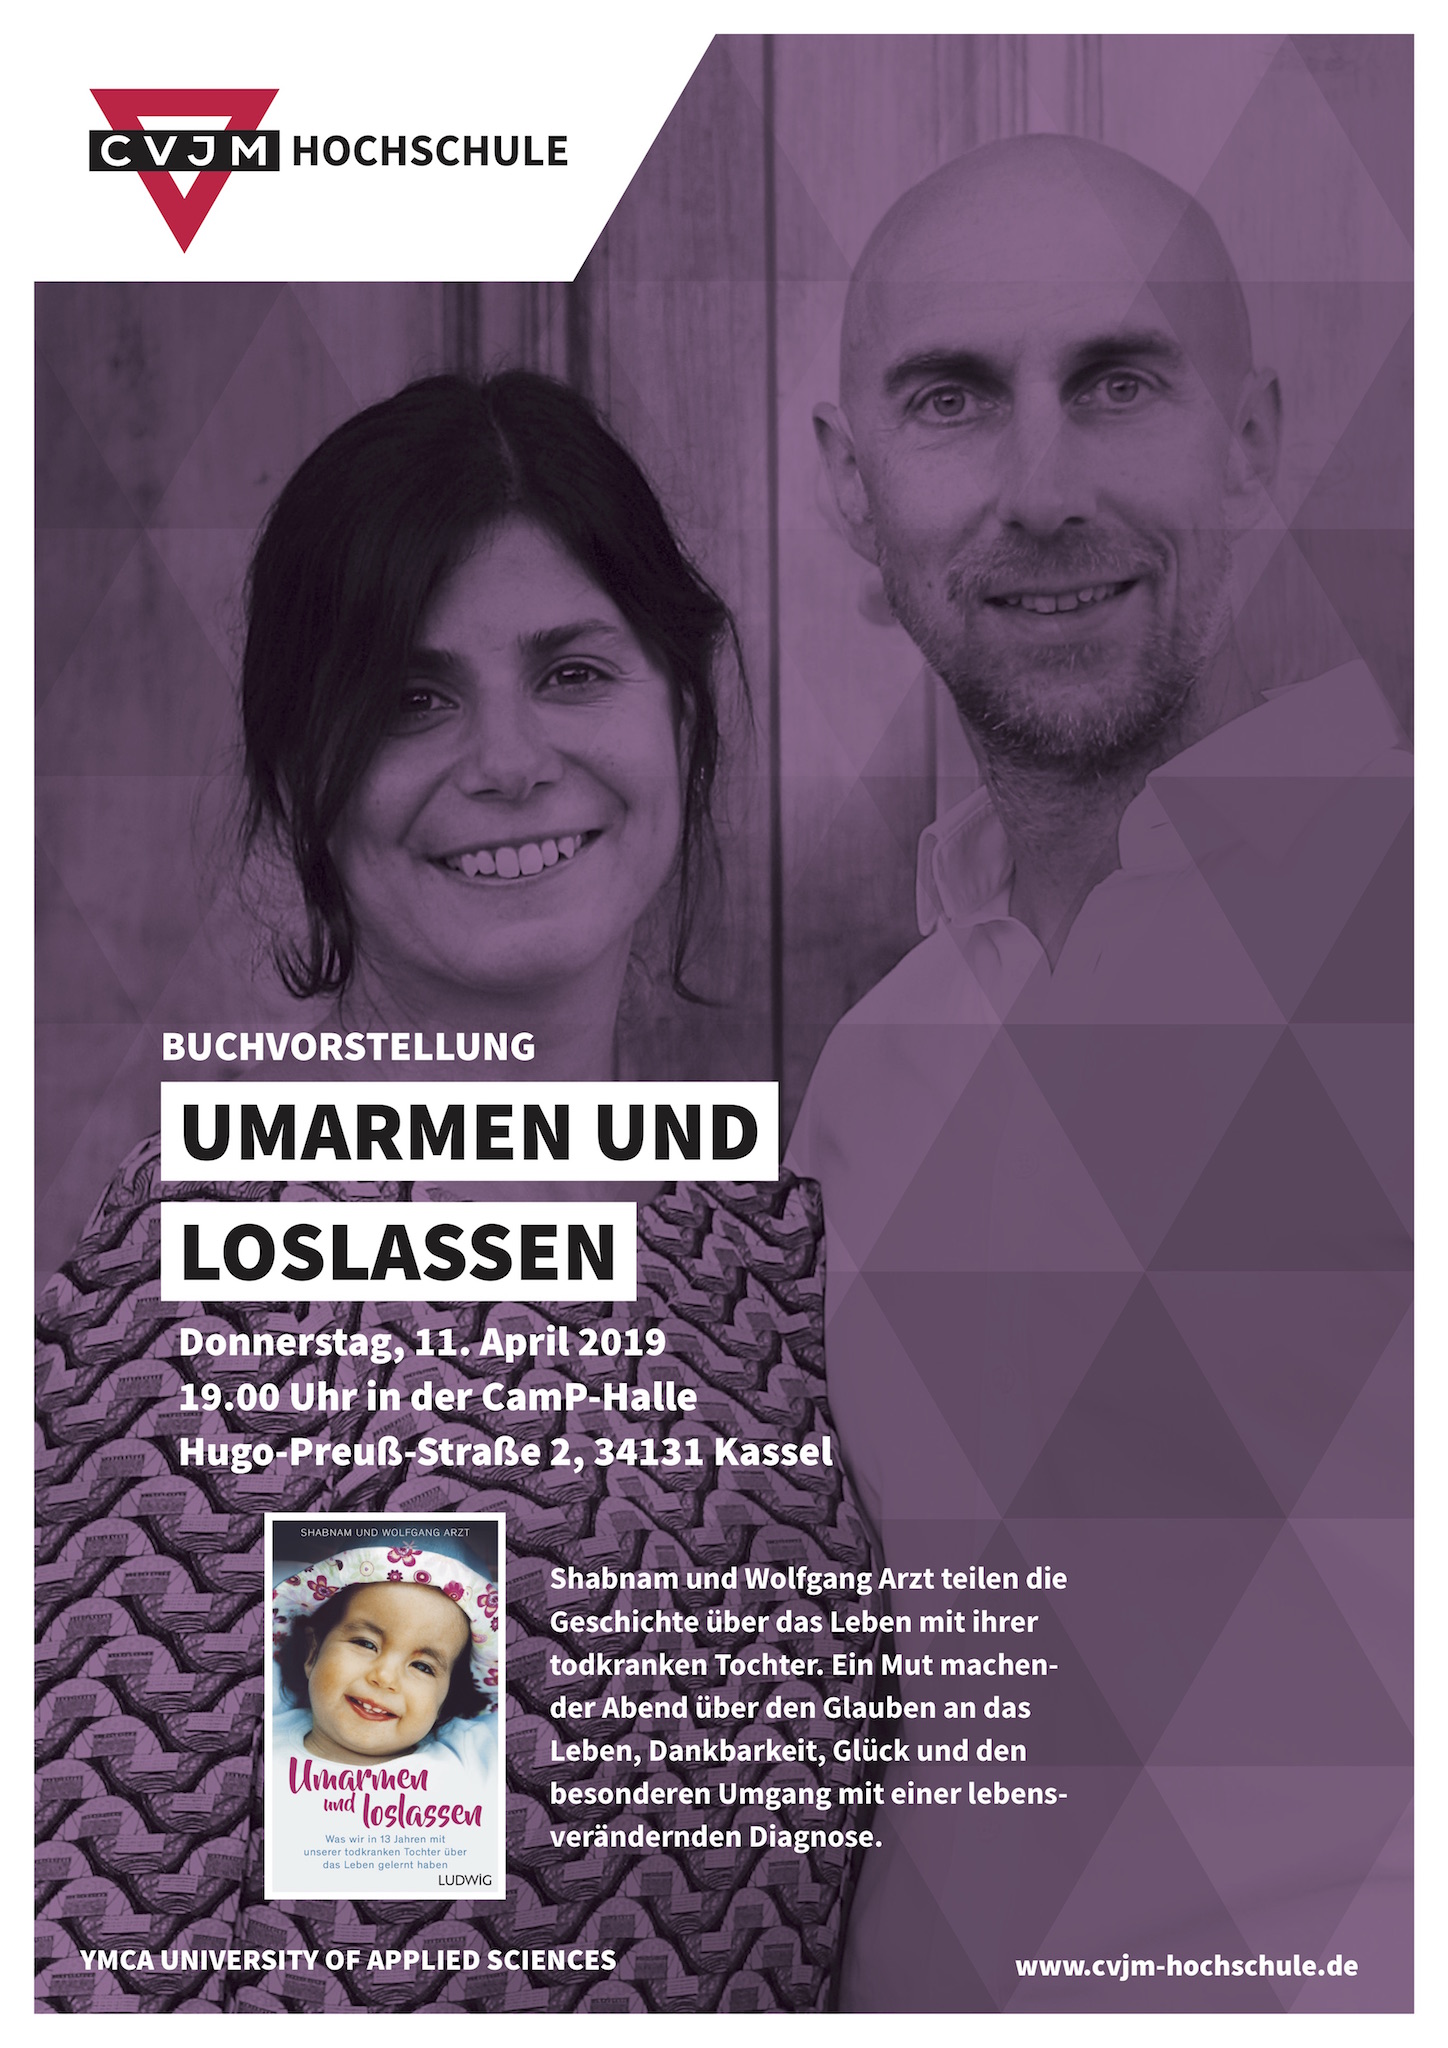 Plakat Buchvorstellung Umarmen und loslassen mit Shabnam und Wolfgang Arzt an der CVJM Hochschule Kassel